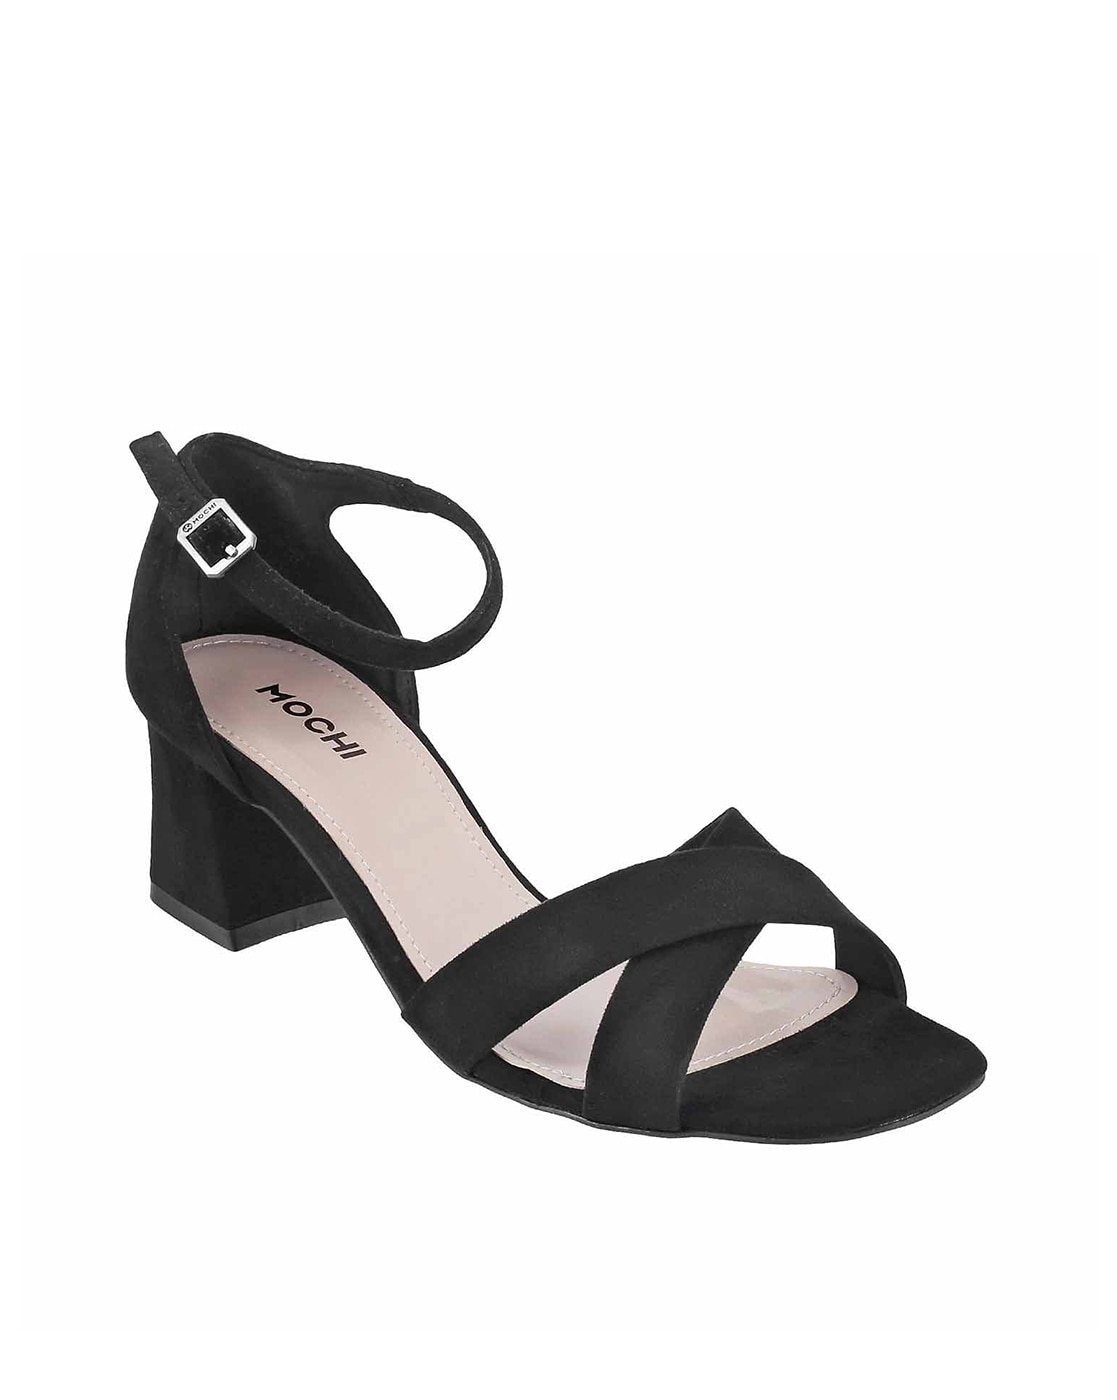 Buy Now: Style with Mochi Shoes' Yellow Heels for Women-hoanganhbinhduong.edu.vn